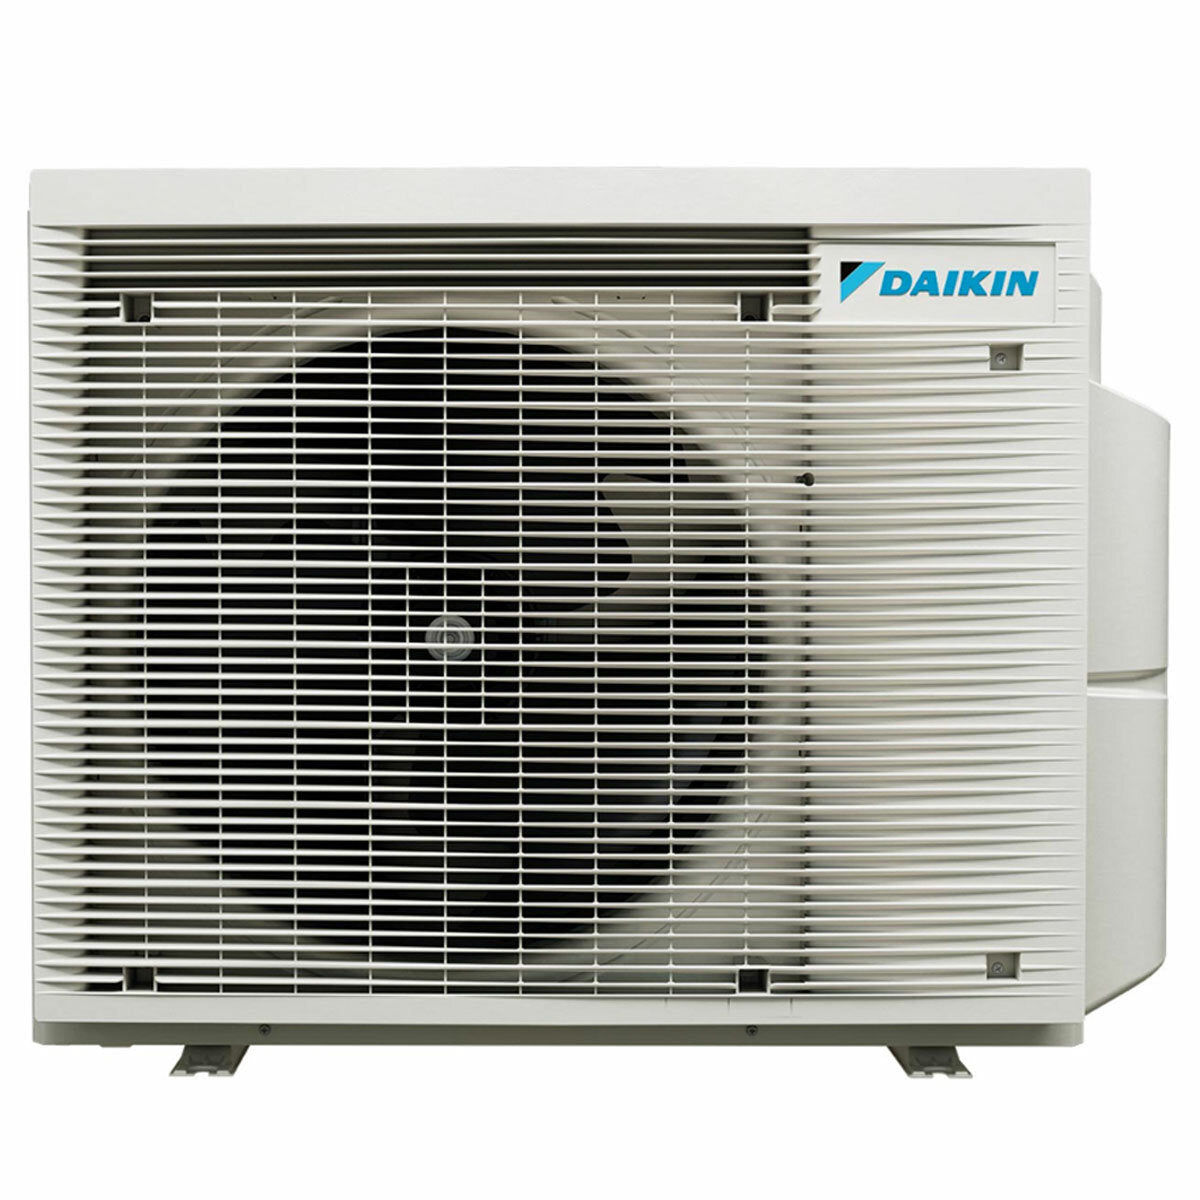 Daikin Stylish White Trial Split-Klimaanlage 12000+15000+18000 BTU Inverter A++ WLAN-Außeneinheit 7,4 kW